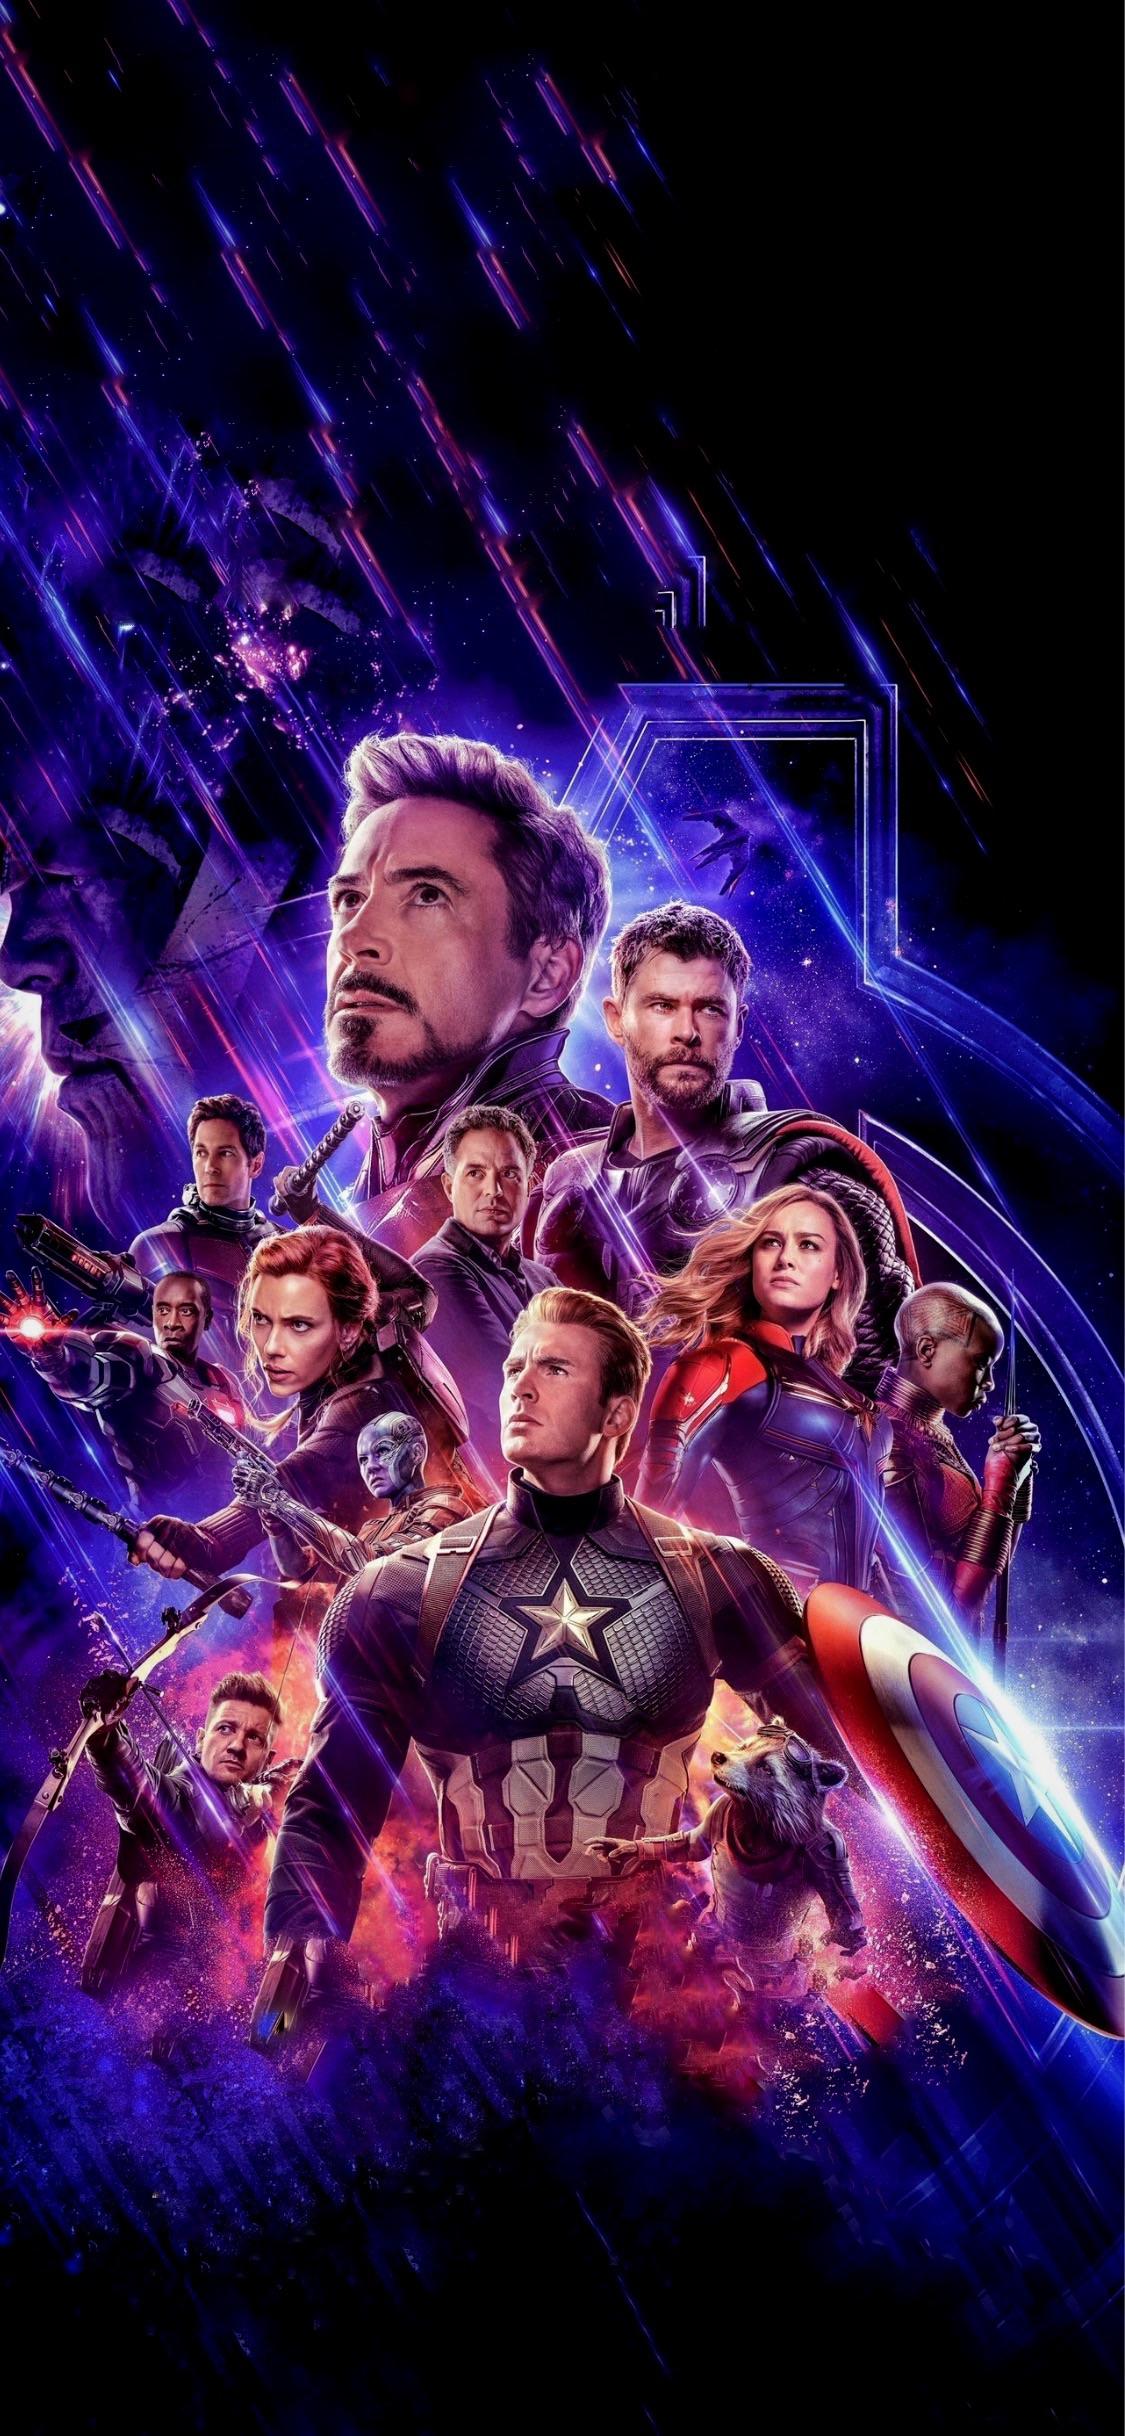 Avengers: End Game Wallpaper for Mobile